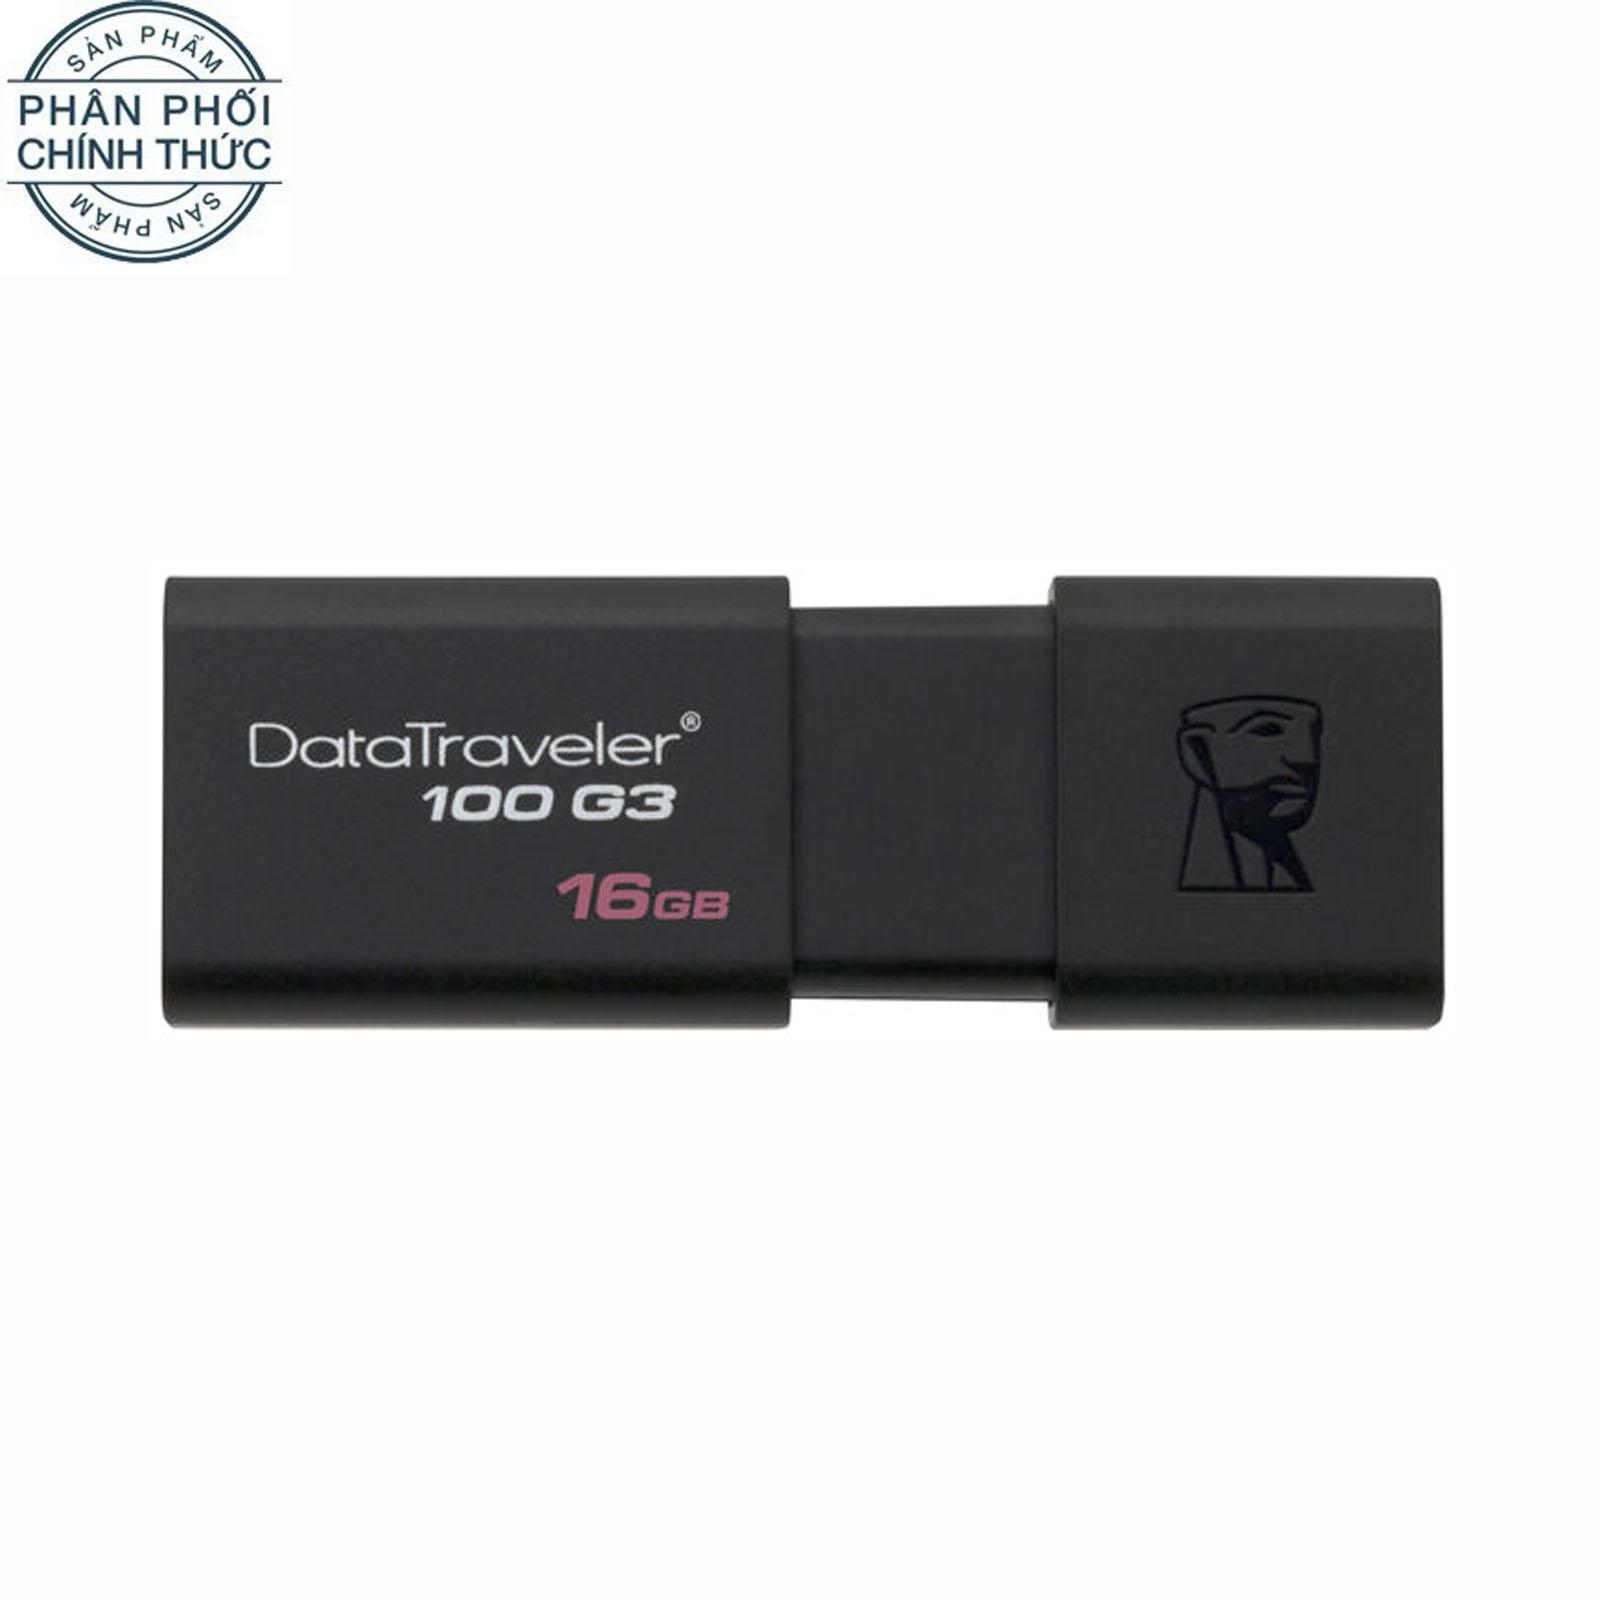 USB 3.0 Kingston Data Traveler DT100G3 100MB/s 16GB (Đen) - Hãng Phân Phối Chính Thức